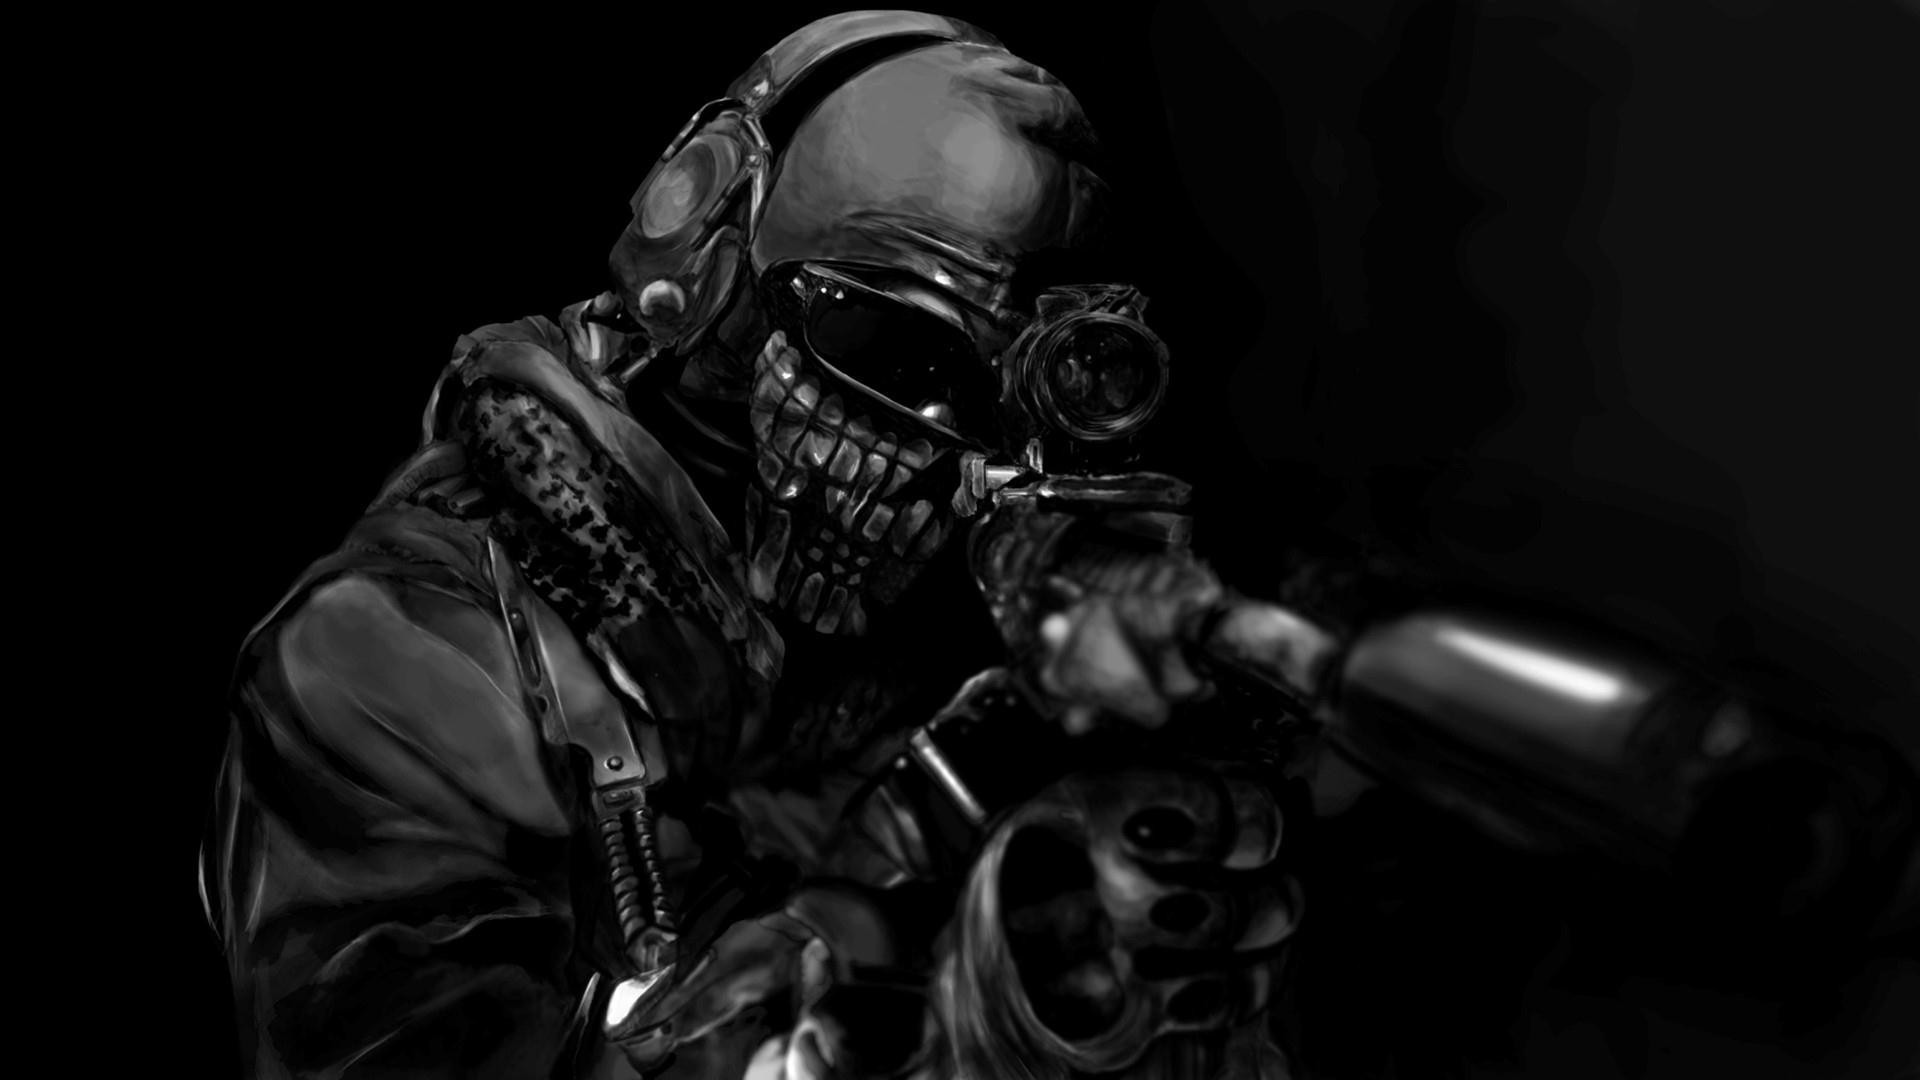 Steam WorkshopCall of Duty Modern Warfare 2 Ghost simple 3840 x 2160